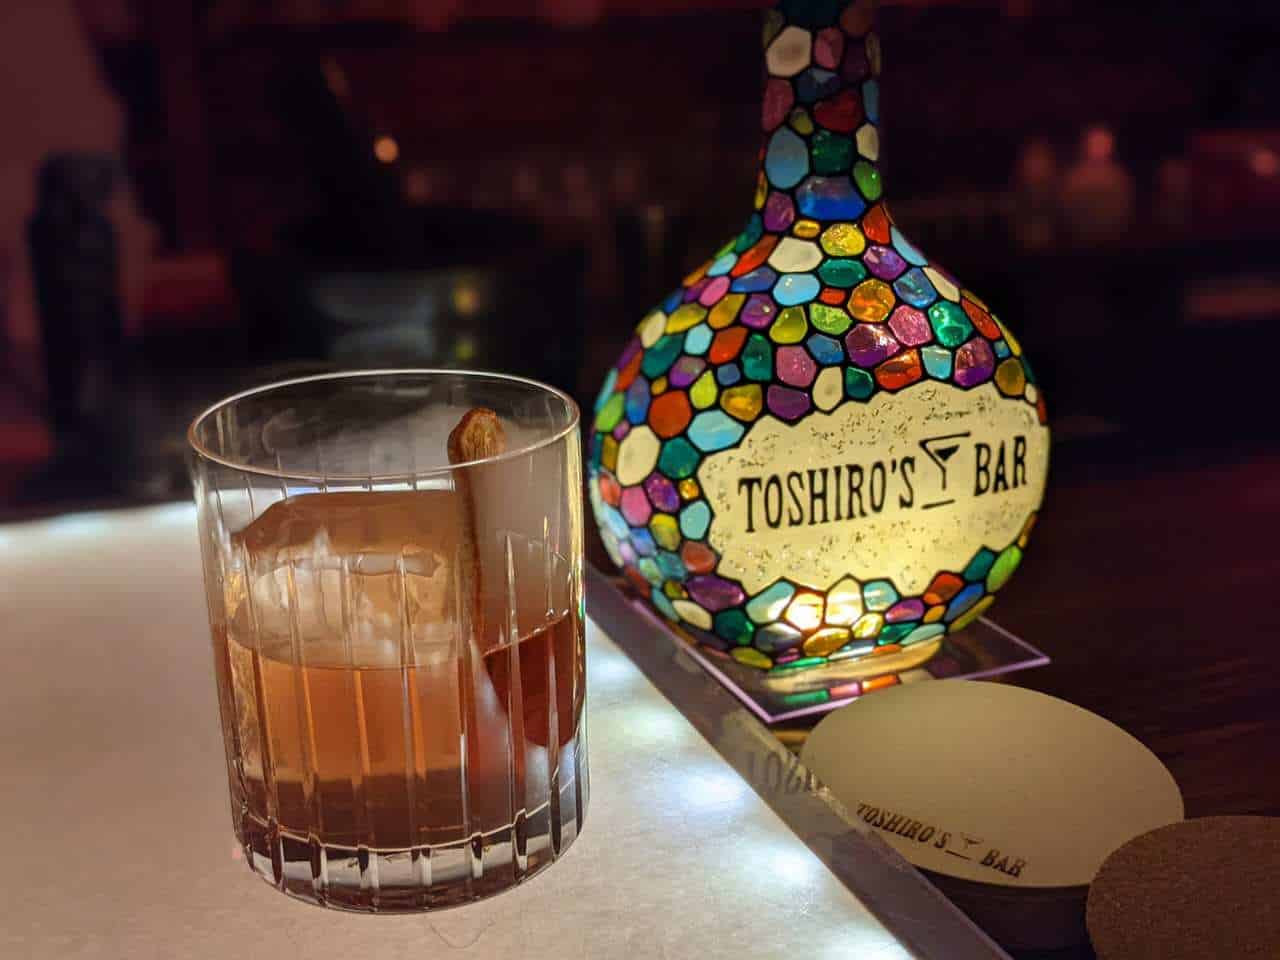 Toshiro's Bar in Hokkaido, Japan.